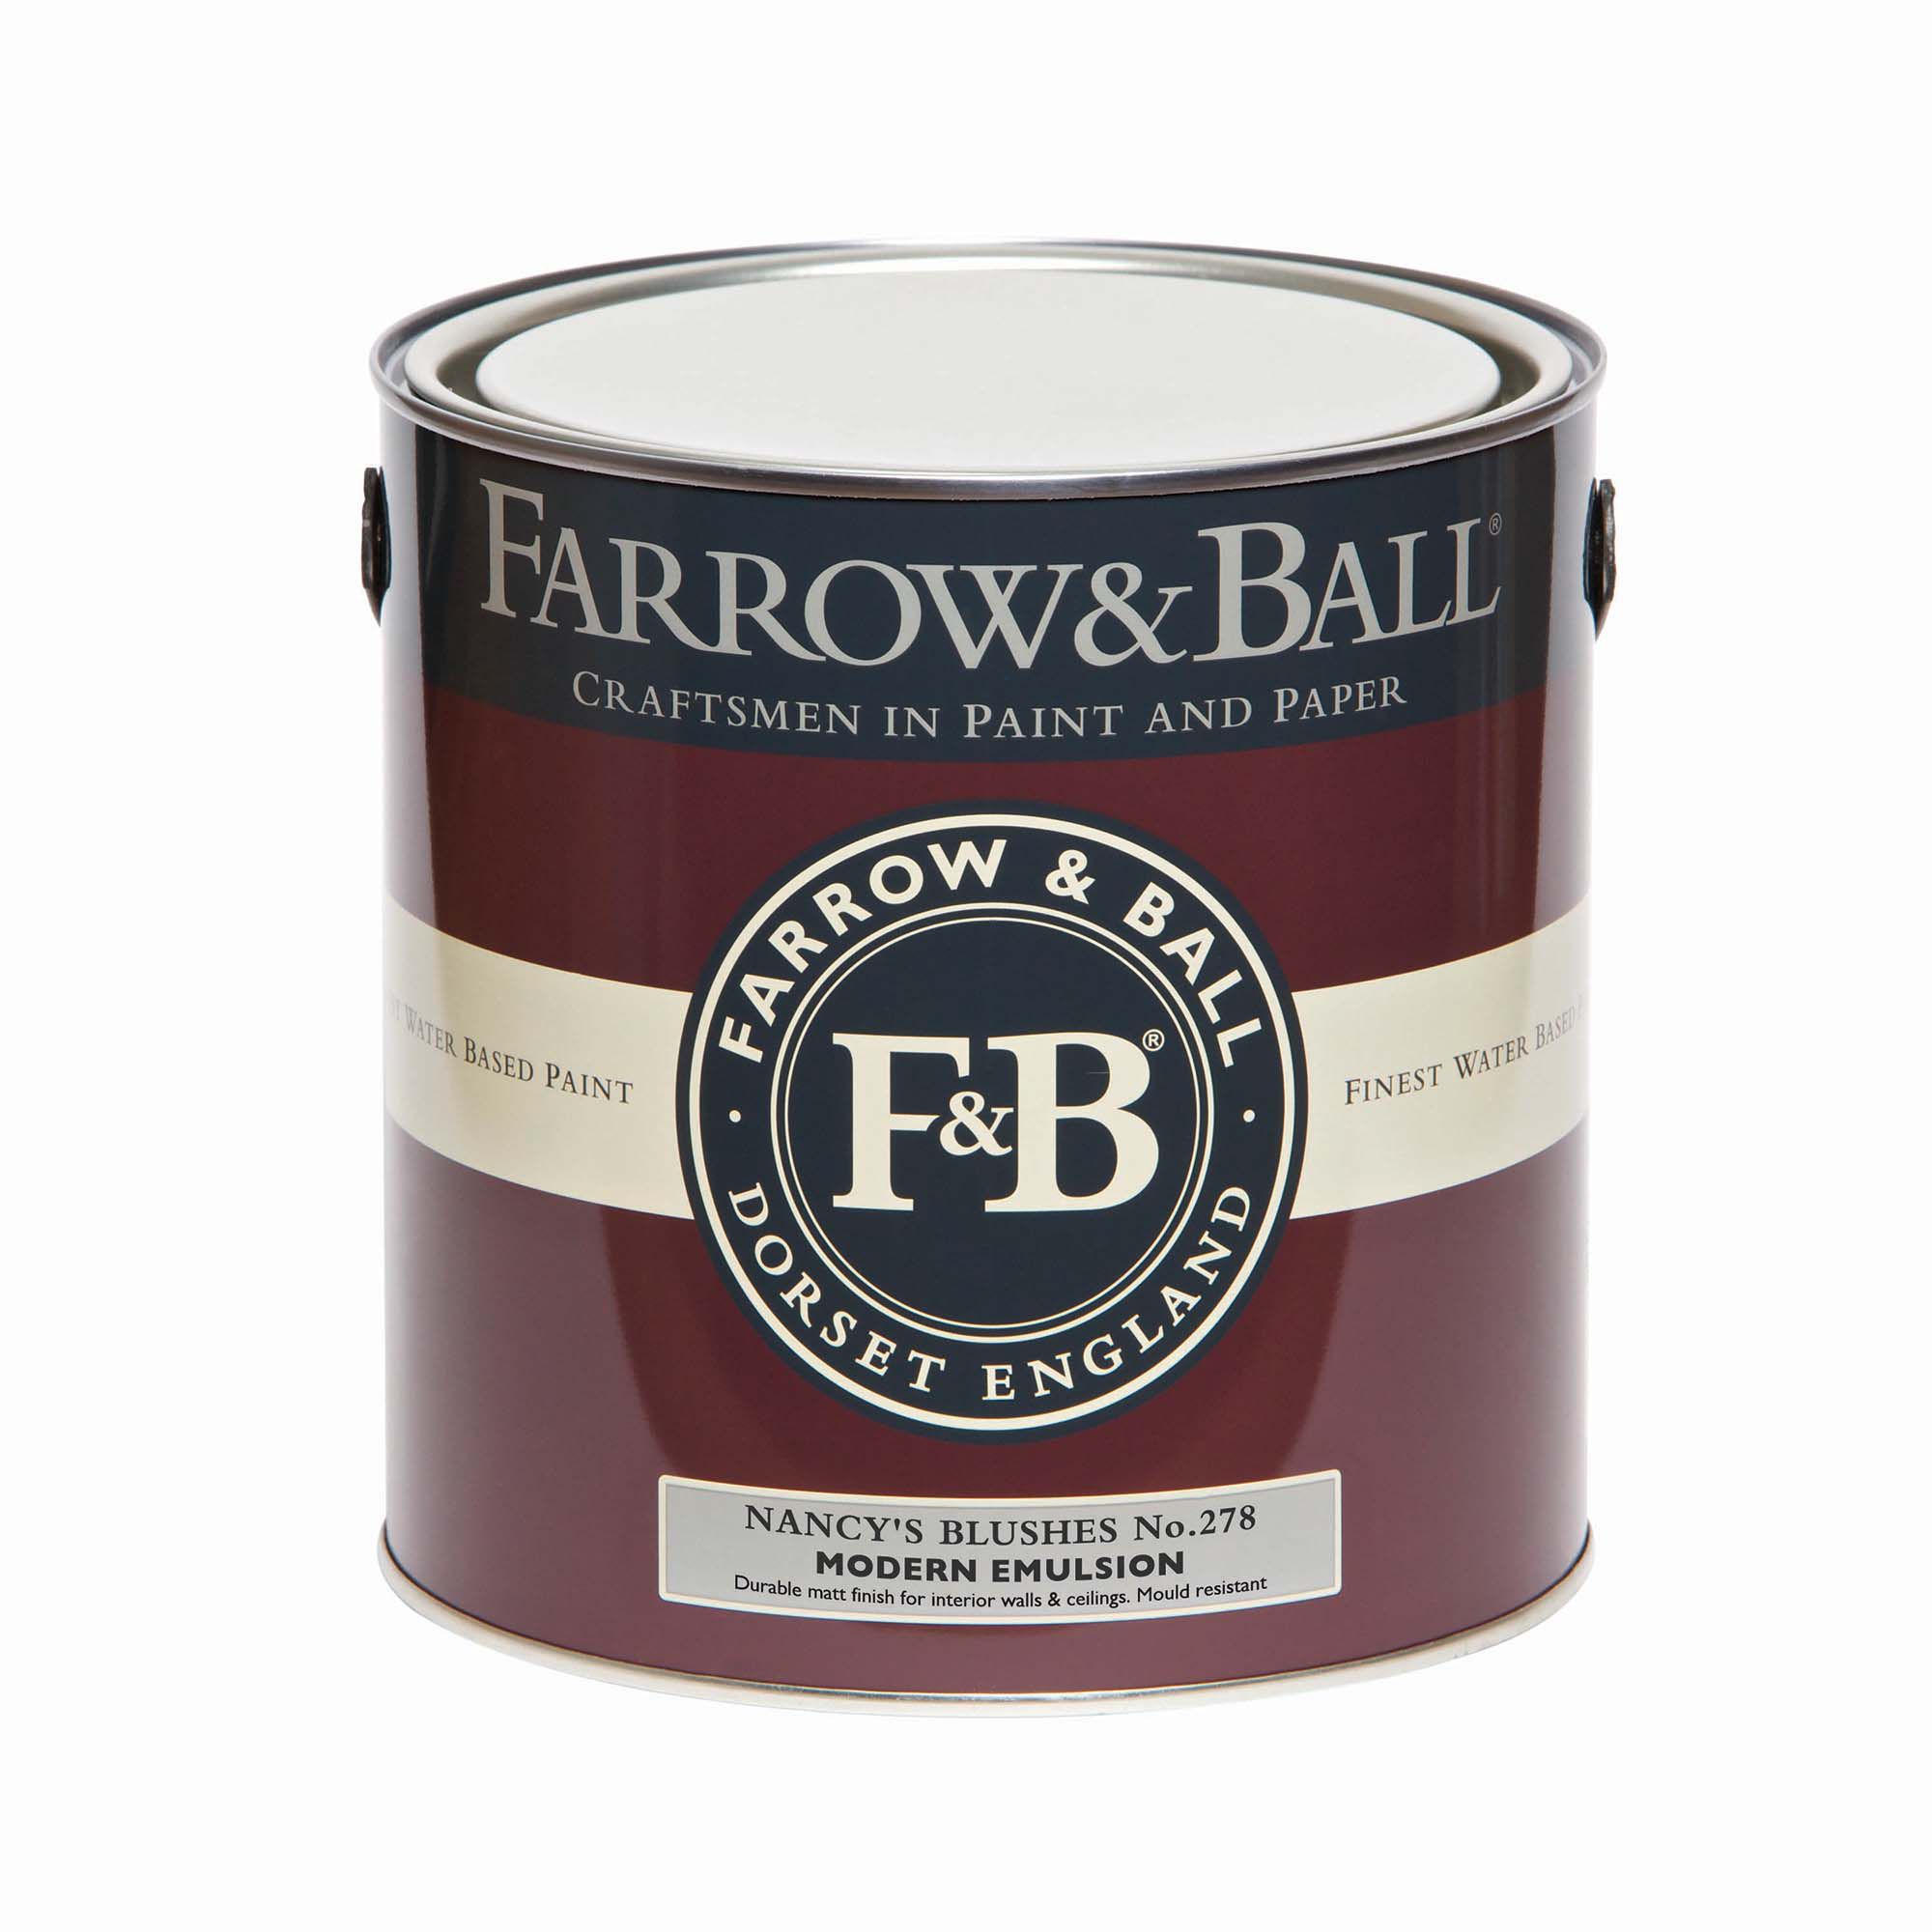 Farrow & Ball Modern Nancy's Blushes No.278 Matt Emulsion paint, 2.5L